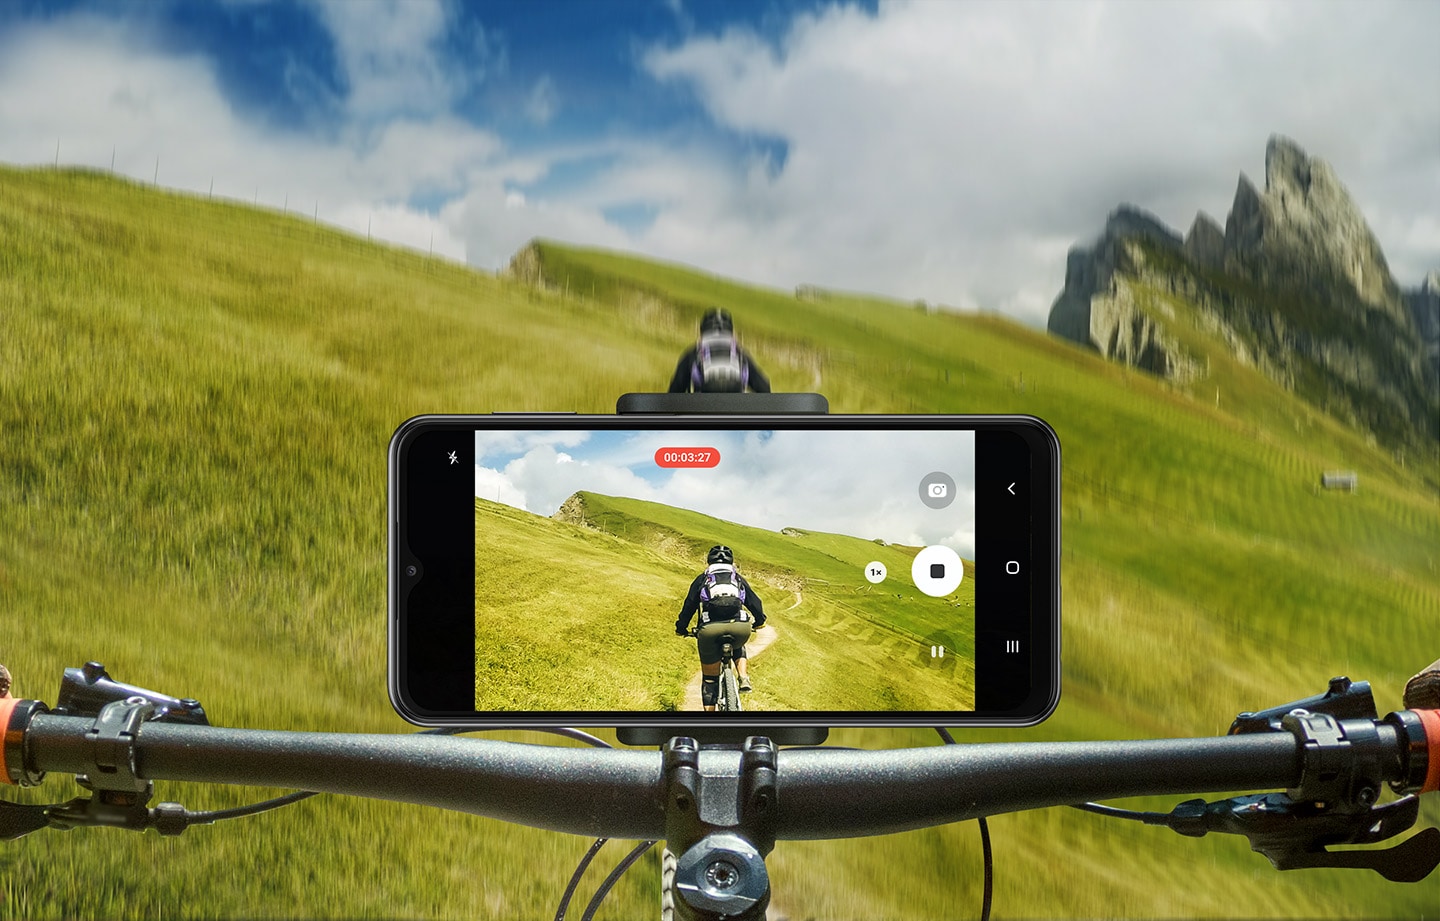 Galaxy A23 5G je postavljen na upravljač planinskog bicikla koji se vozi van puta po travnatim padinama. Njegova kamera snima biciklistu ispred njih.